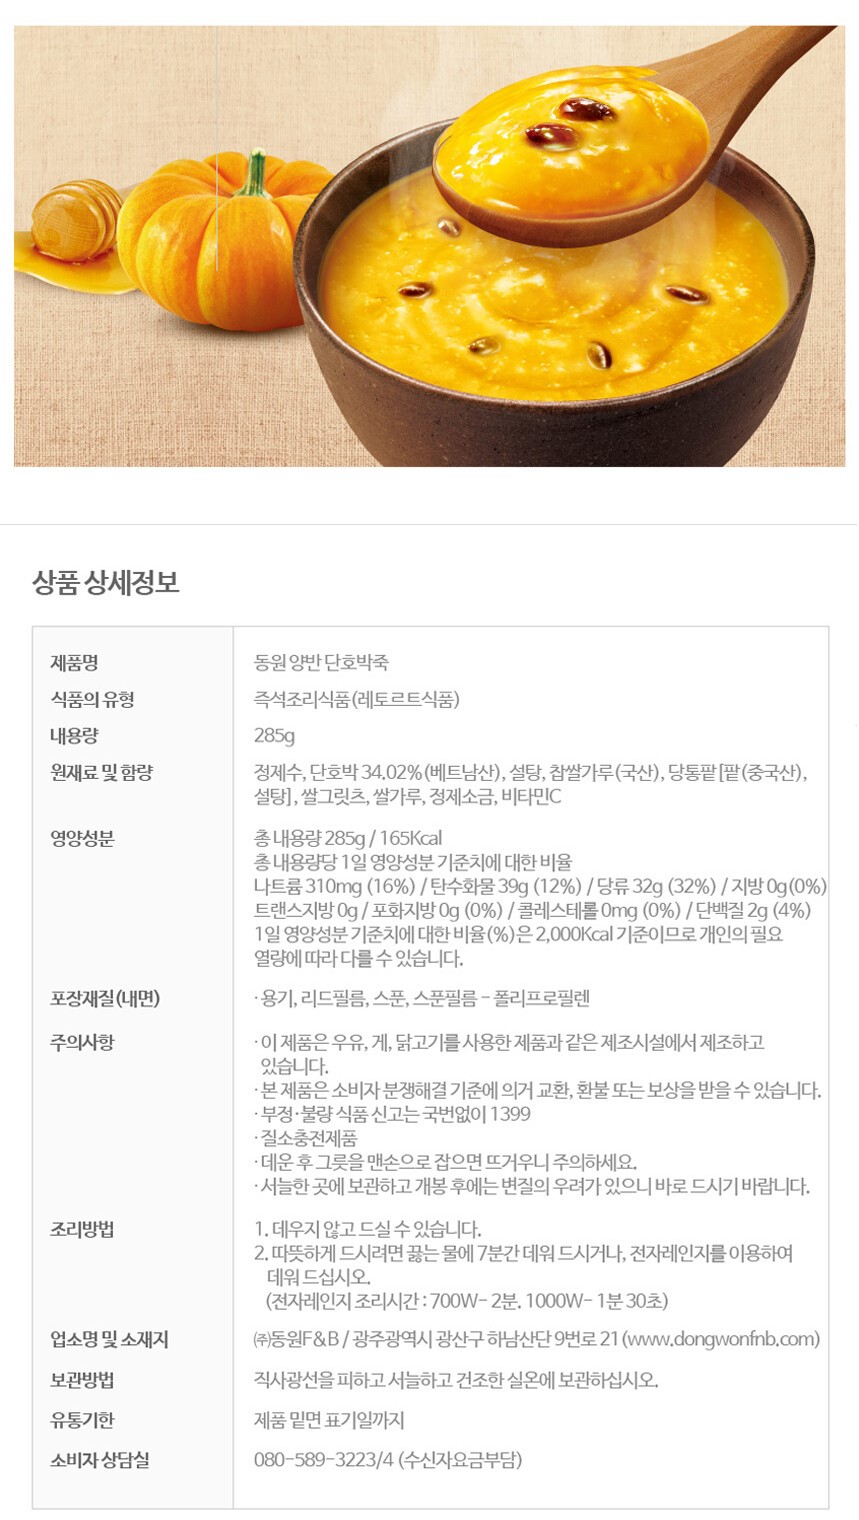 韓國食品-[東遠] 兩班 甜南瓜粥 285g